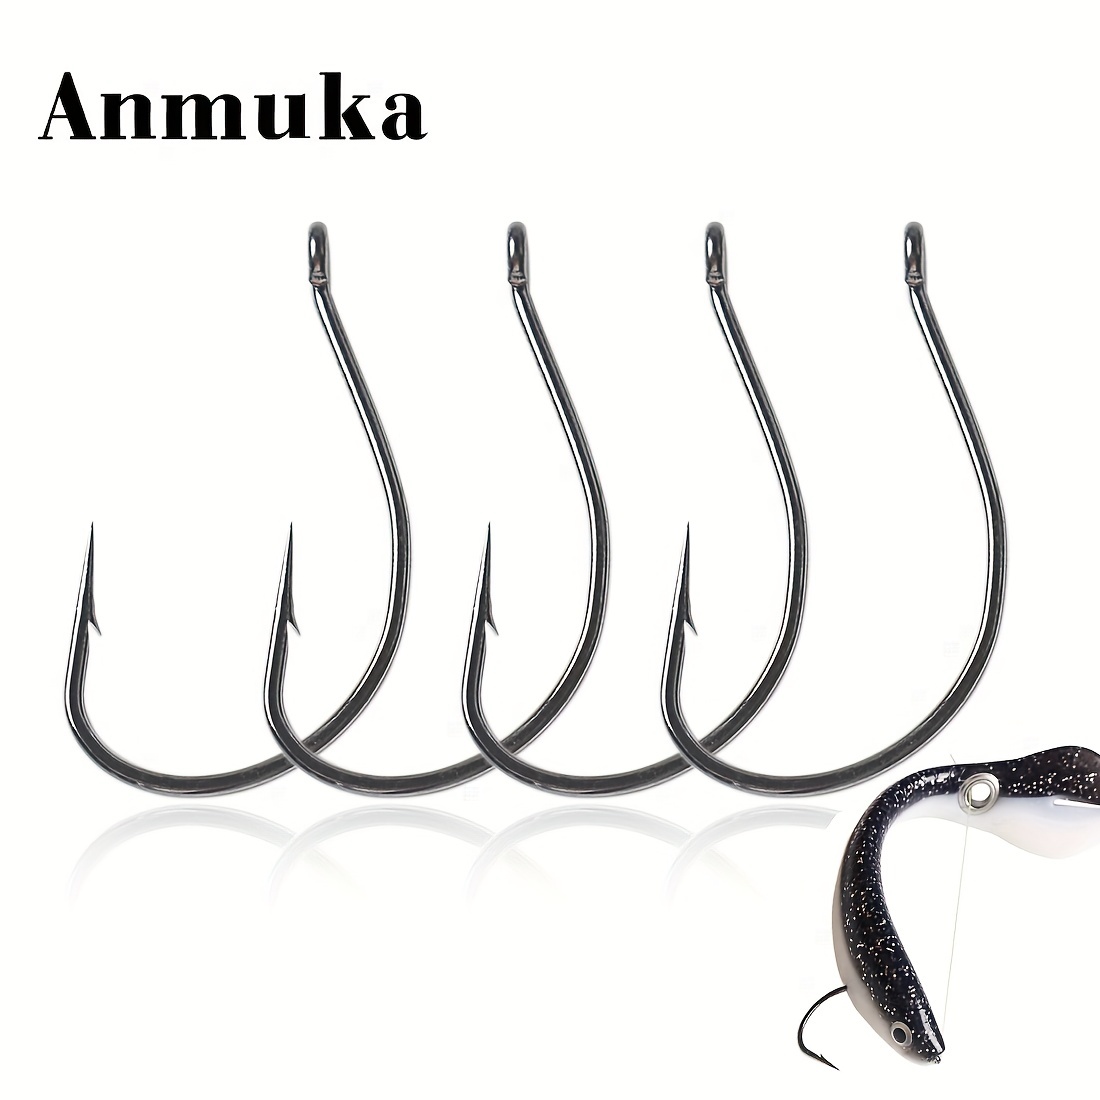 Gamakatsu Nautilus Circle Hook Needle Point Offset with Ringed Eye